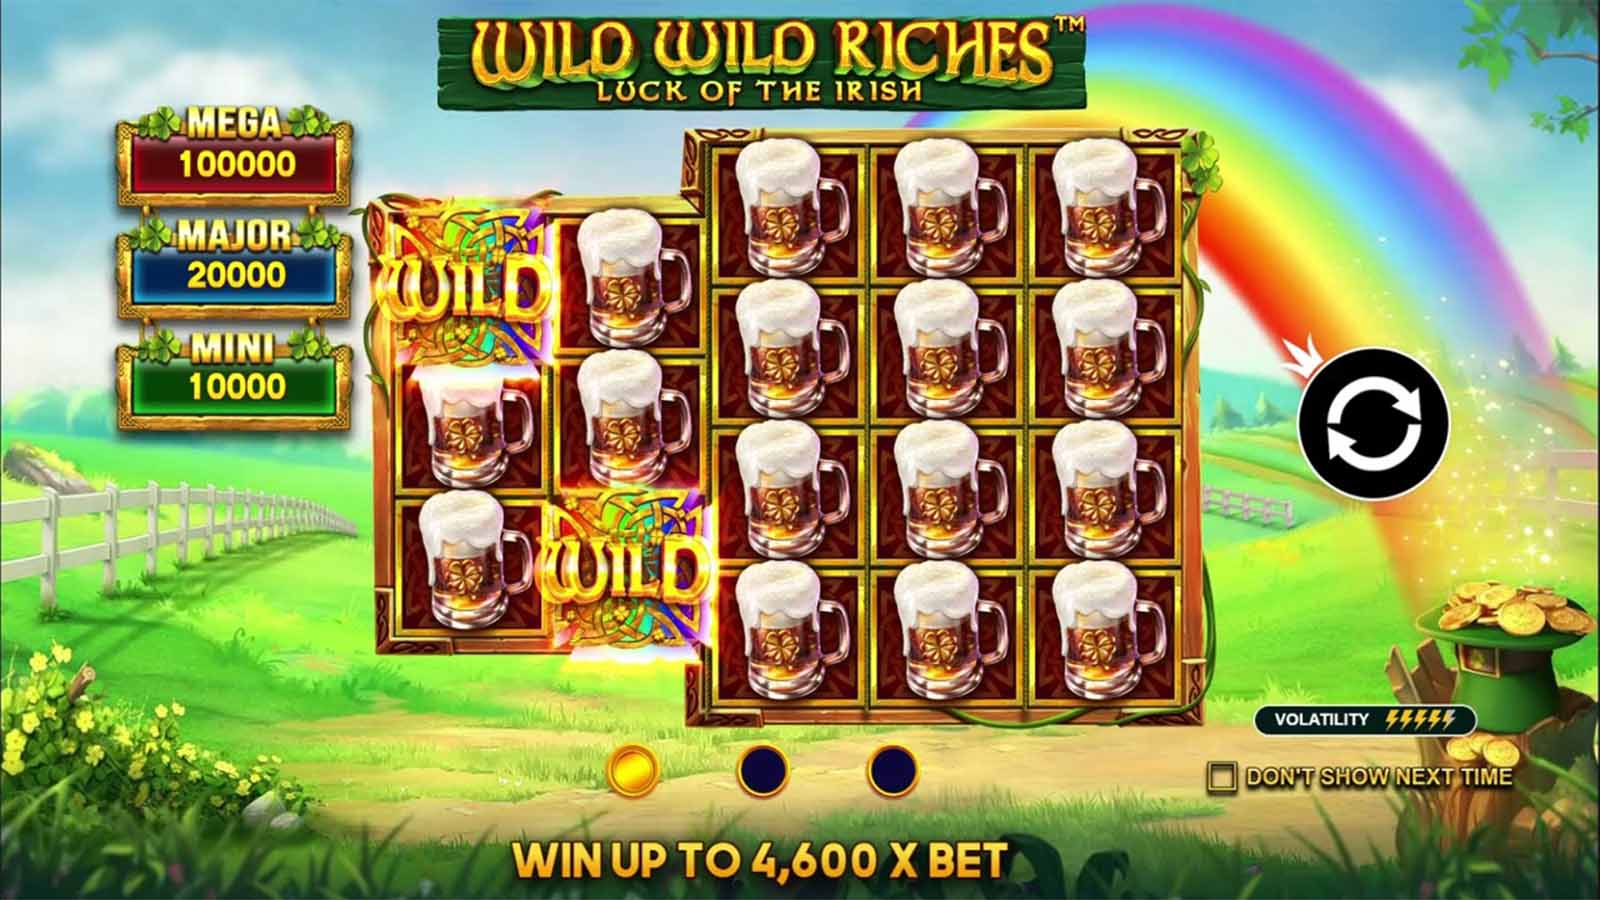 7.Wild-Wild-Riches